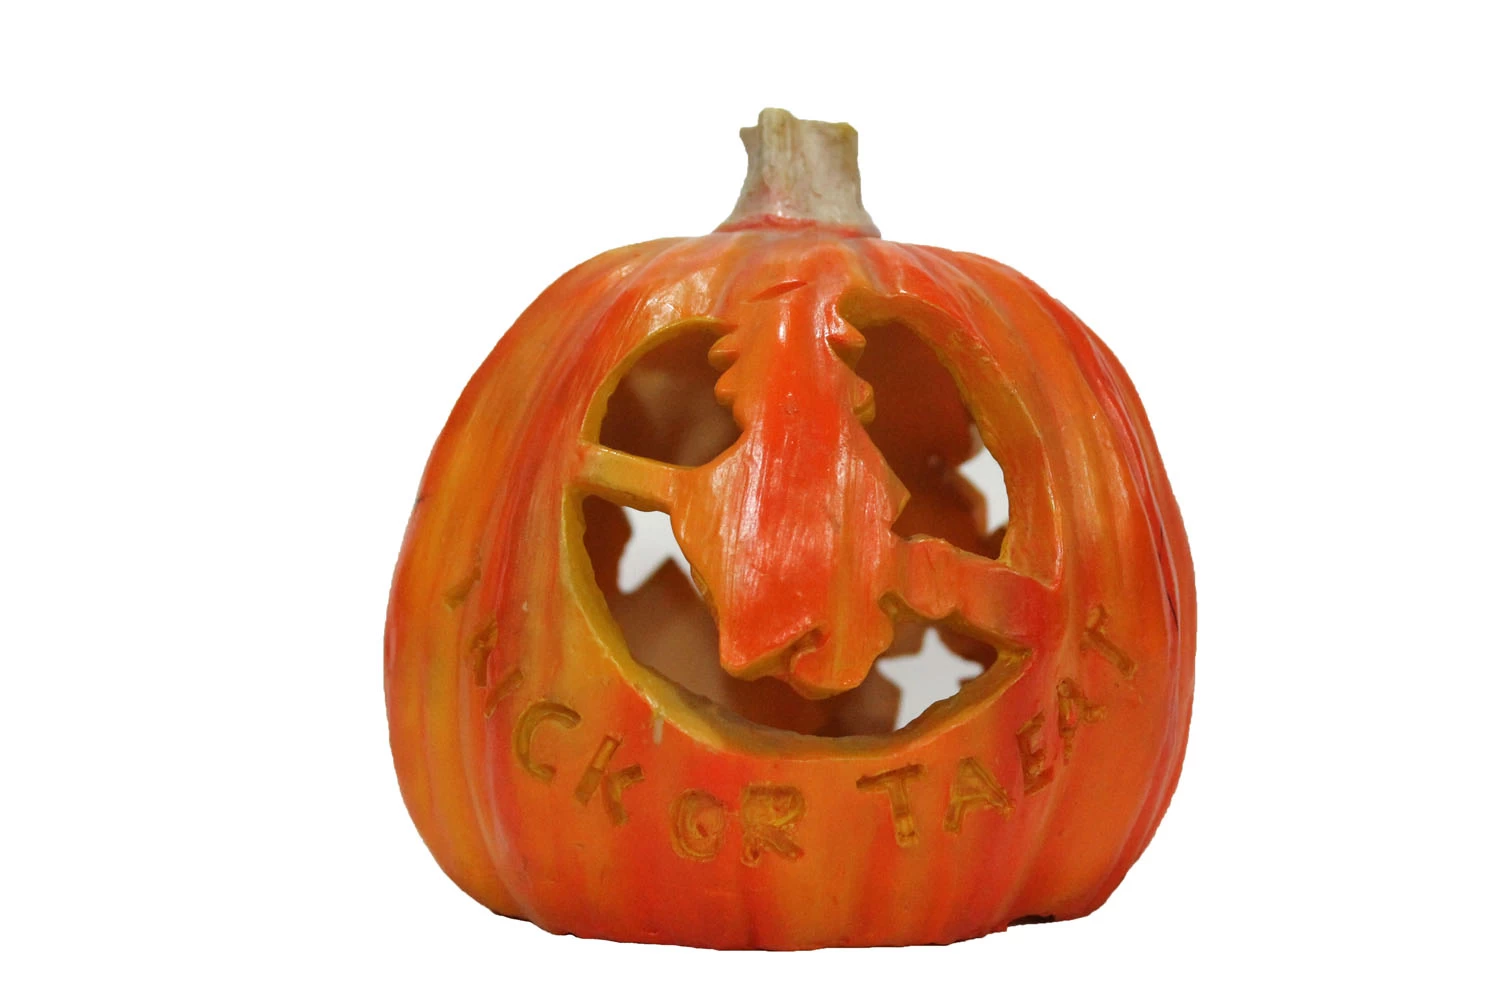 Pumpkin wholesale, PU foam pumpkin, Product Polyurethane carving pumpkins, Halloween  pumpkin decorating ideas, pumpkin decorations, pumpkin decorating